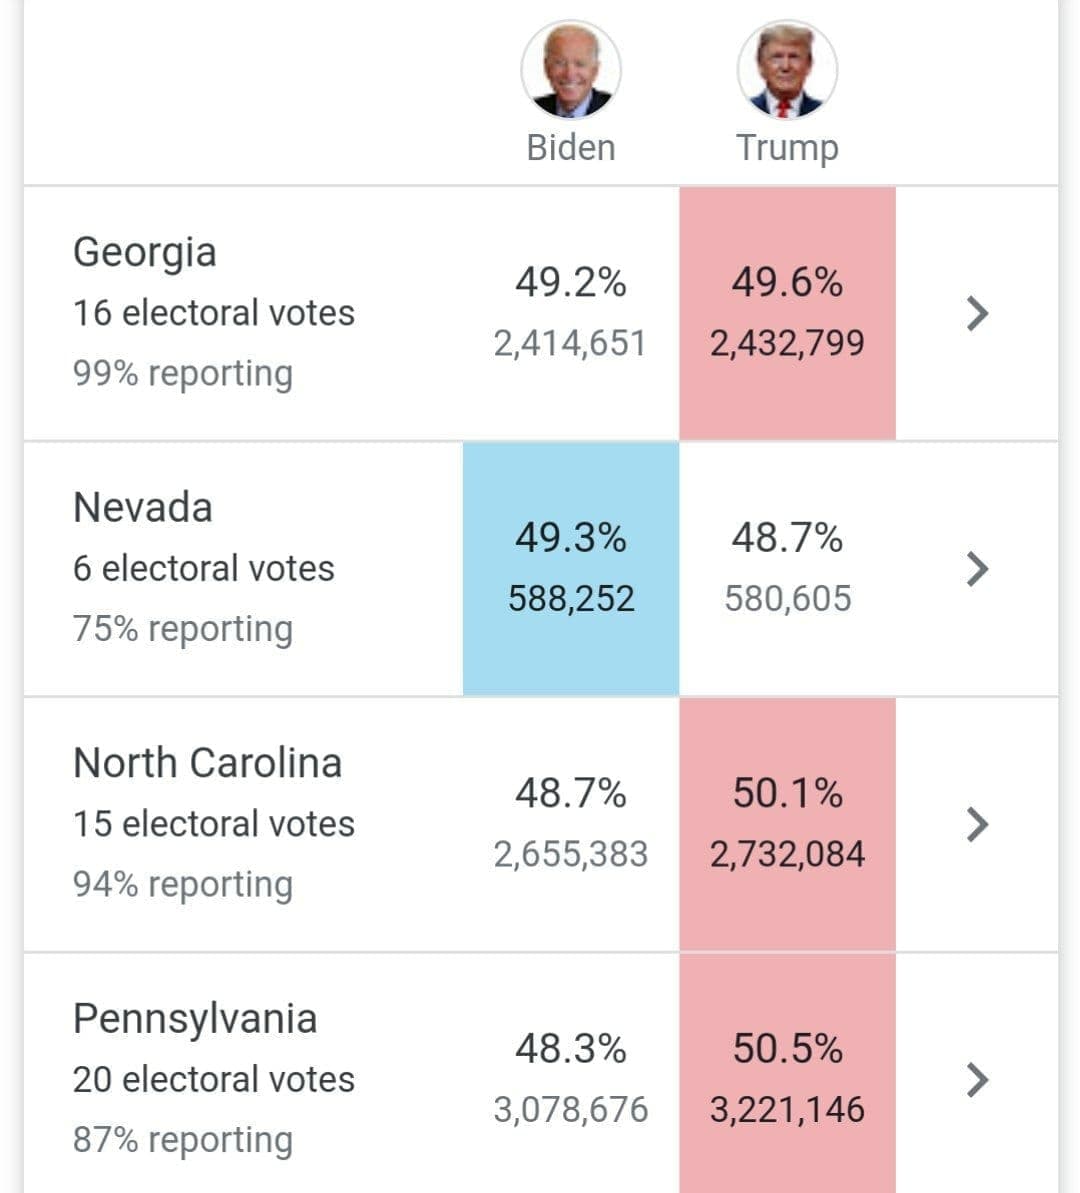 فقط ۶ الکتورال تا پیروزی بایدن / بایدن ۲۶۴ به ۲۱۴ در کسب الکتورال، پیشتاز است / نتایج انتخابات ایالت تعیین کننده نوادا با ۶ رای الکتورال جمعه مشخص می‌شود؛ فعلا بایدن جلوتر است / تنها راه باقی مانده برای برنده شدن ترامپ: پیروزی در همه ایالت‌های جورجیا، کارولینای شمالی، پنسیلوانیا و یکی از دو ایالت آریزونا یا نوادا / اختلاف بایدن و ترامپ در آریزونا به اندازه ۱۱ هزار رای به نفع ترامپ کم شد؛ بایدن هنوز ۷۴ هزار رای جلوتر است؛ آسوشیتدپرس بایدن را پیروز اعلام کرد / ترامپ: شمارش آرا را متوقف کنید / بایدن: همه آرا باید شمرده شوند